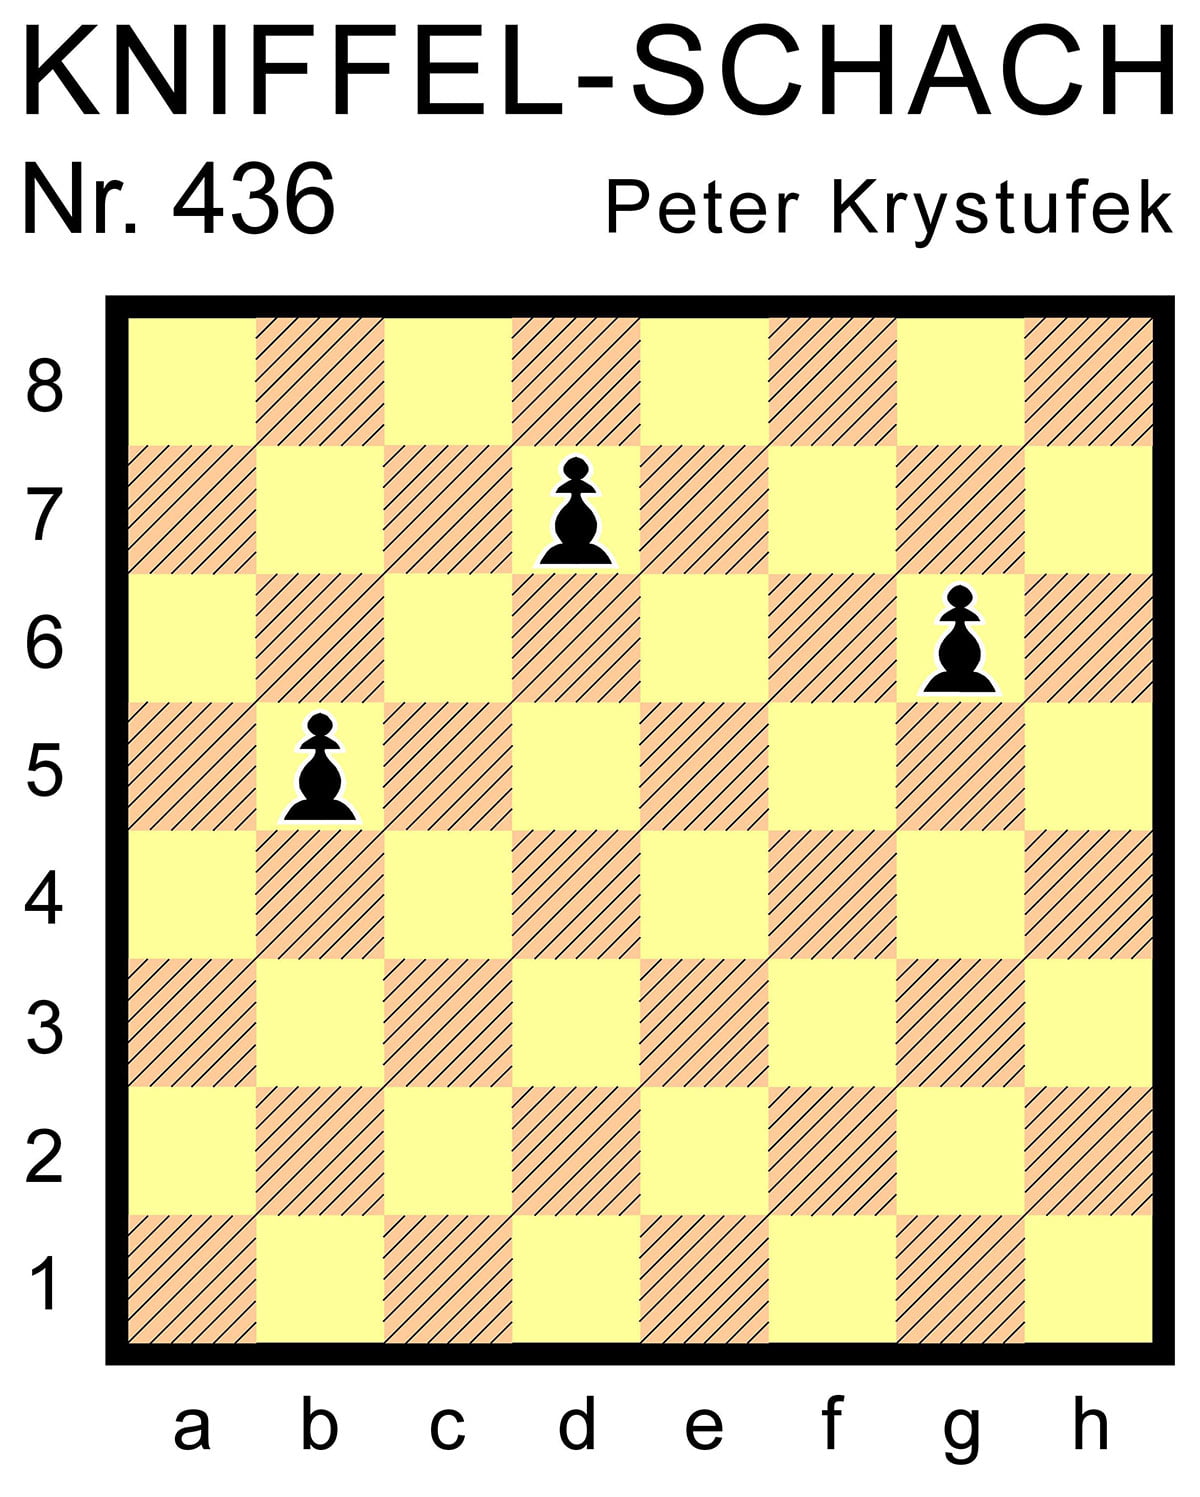 Kniffel-Schach Nr. 436